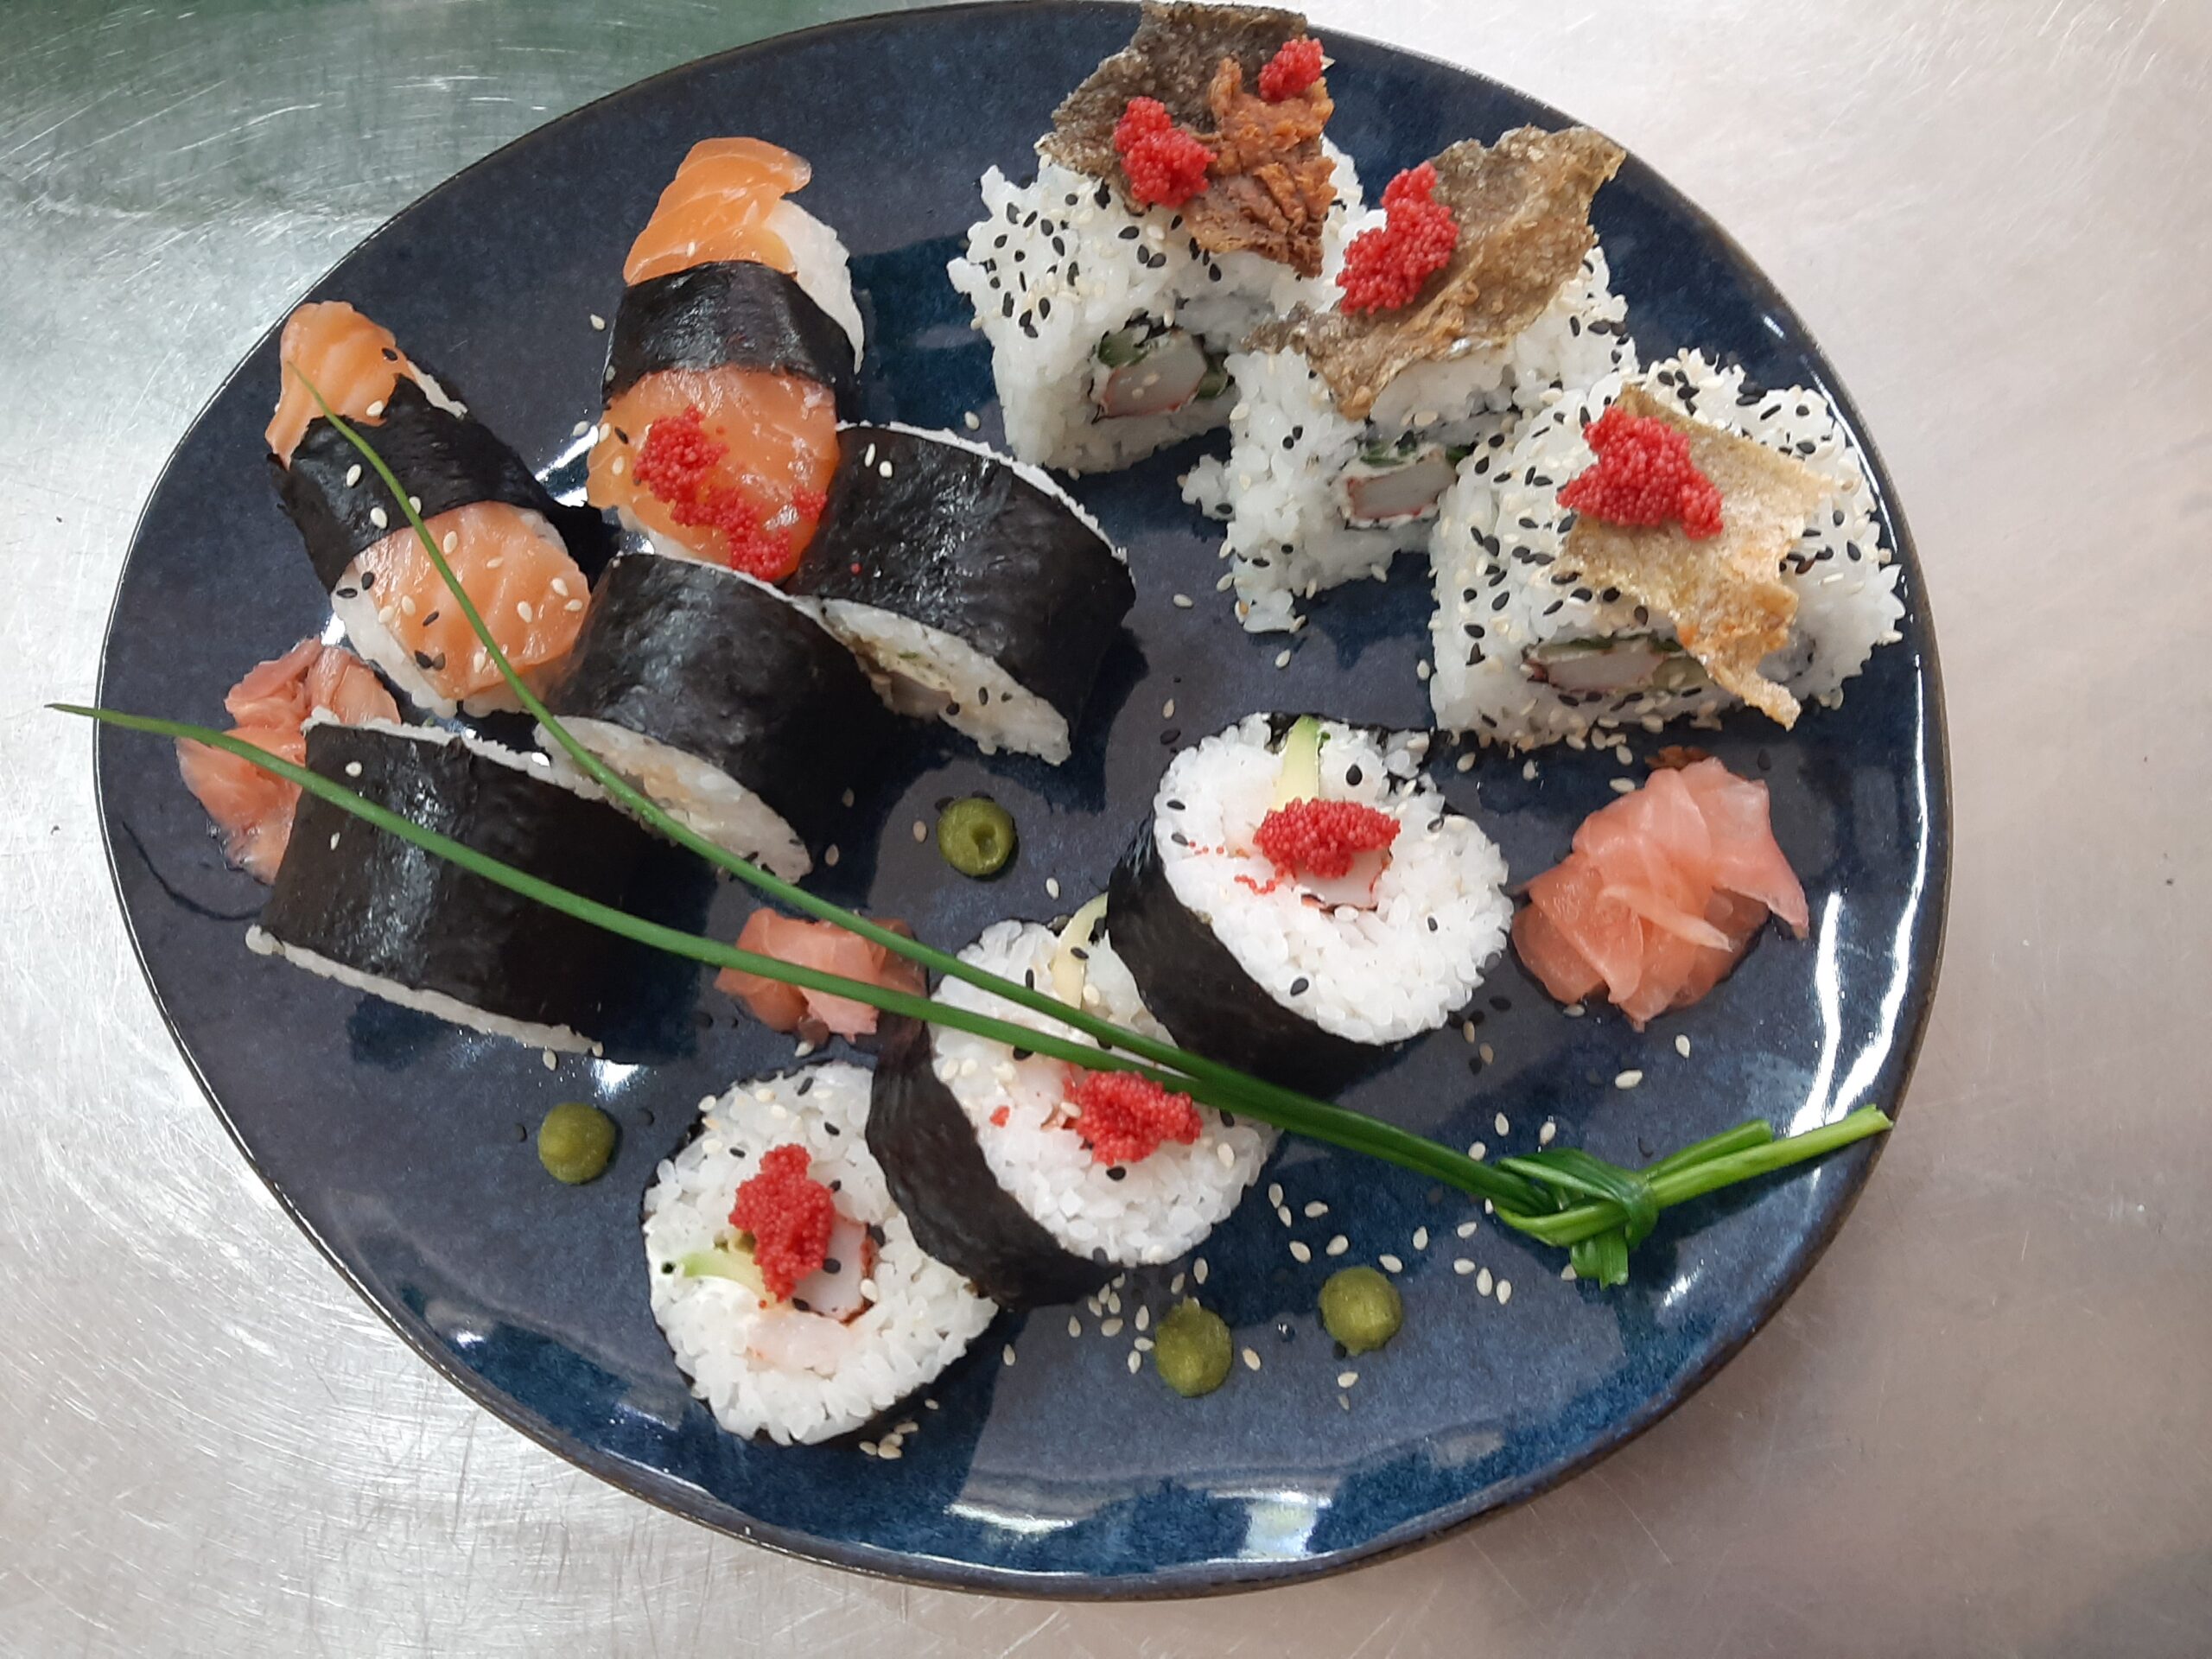 Jakie składniki dodajemy do sushi? Kilka pomysłów na dodatki do sushi.